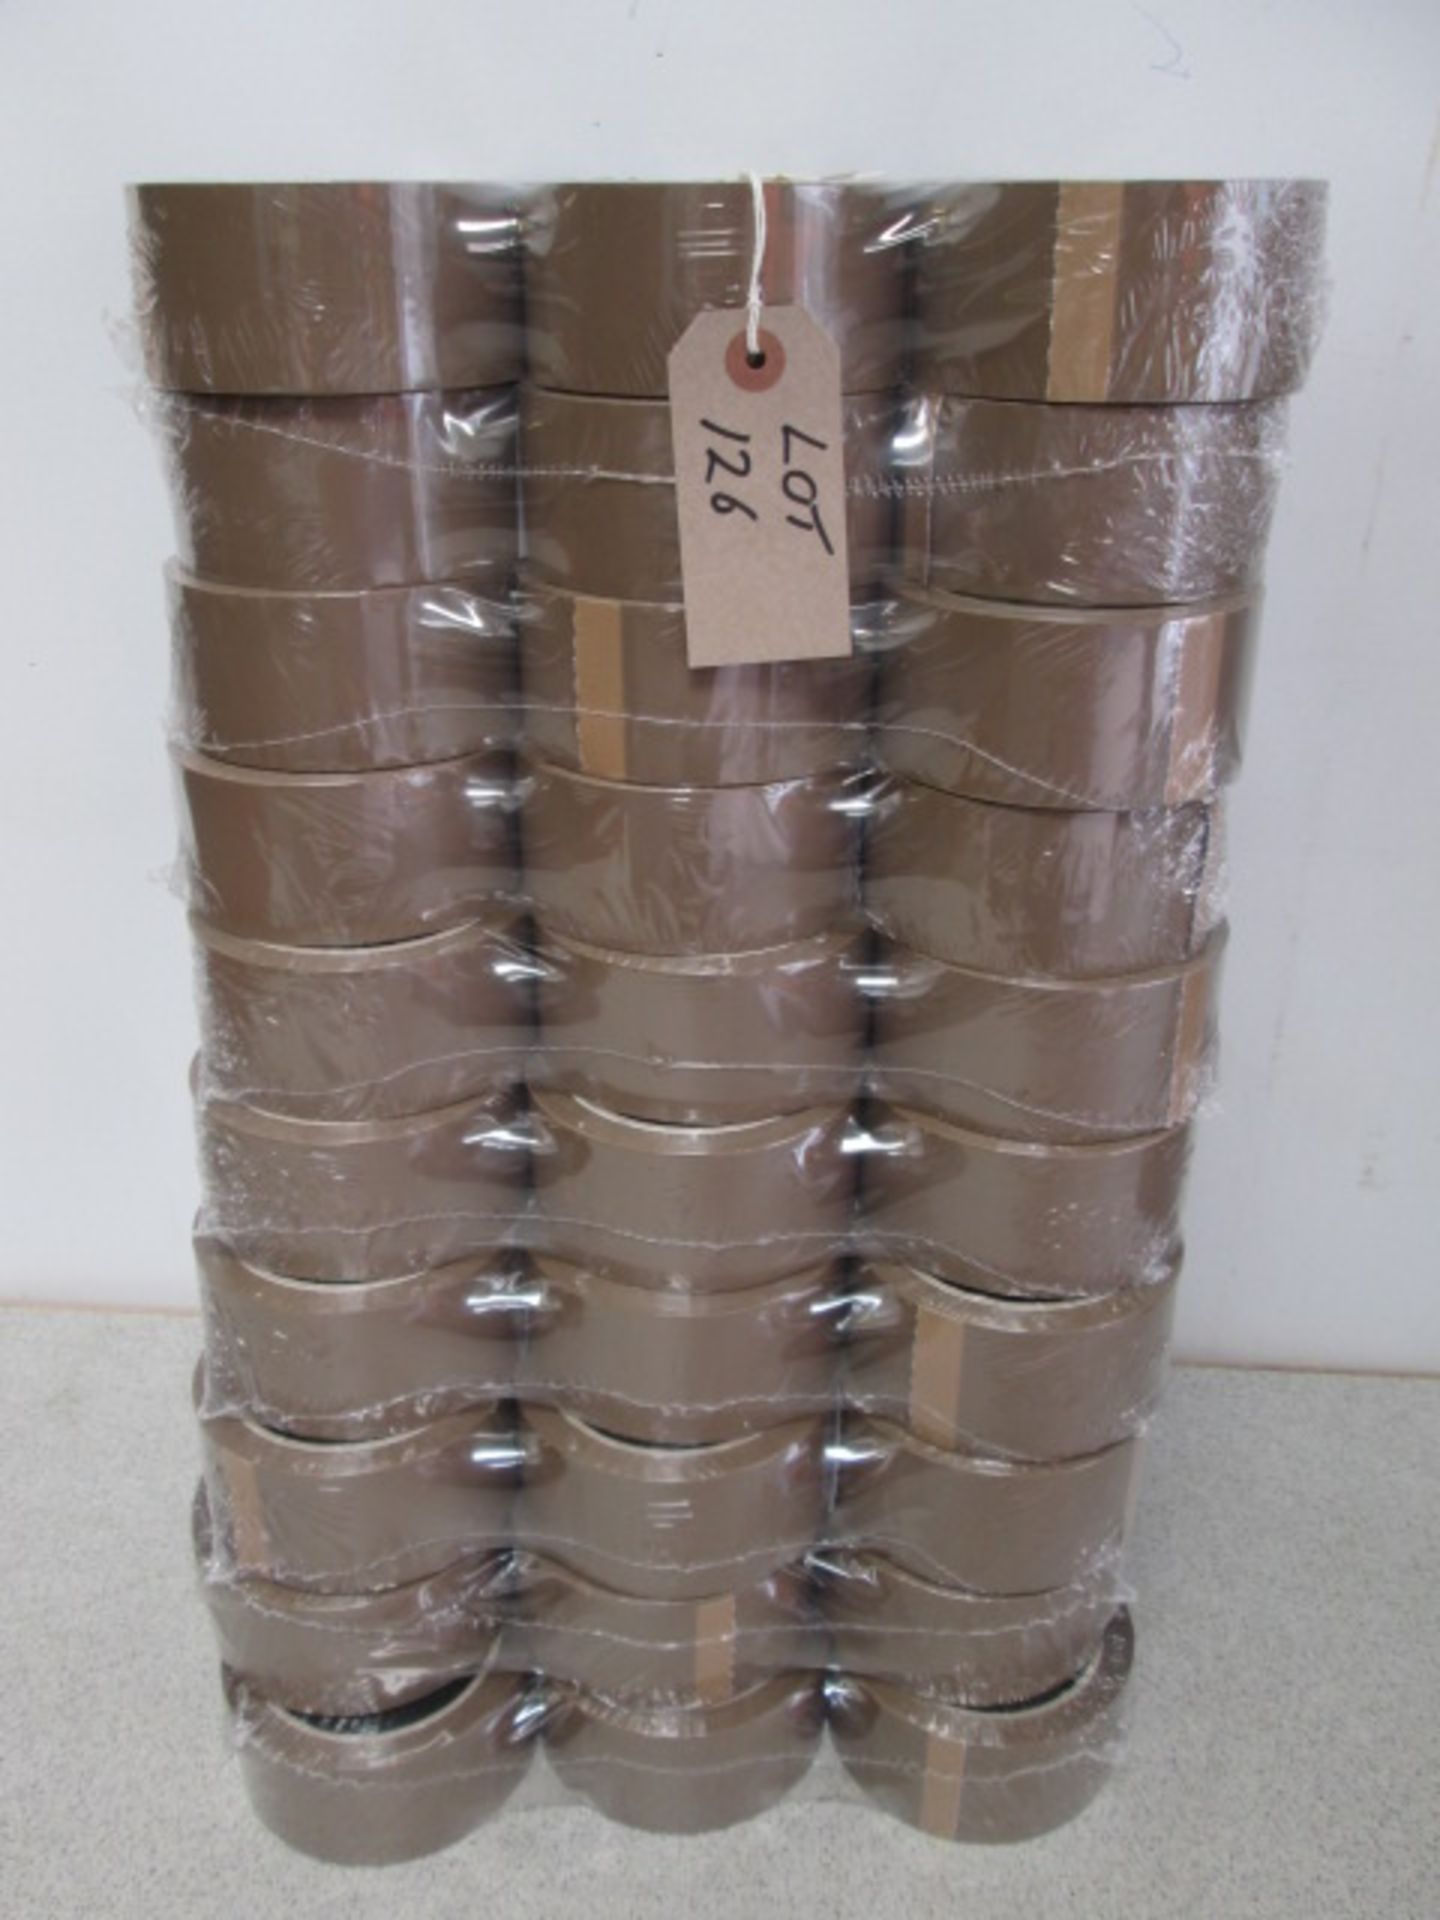 60 Rolls of Prima Brown Packaging Tape. New & Unused